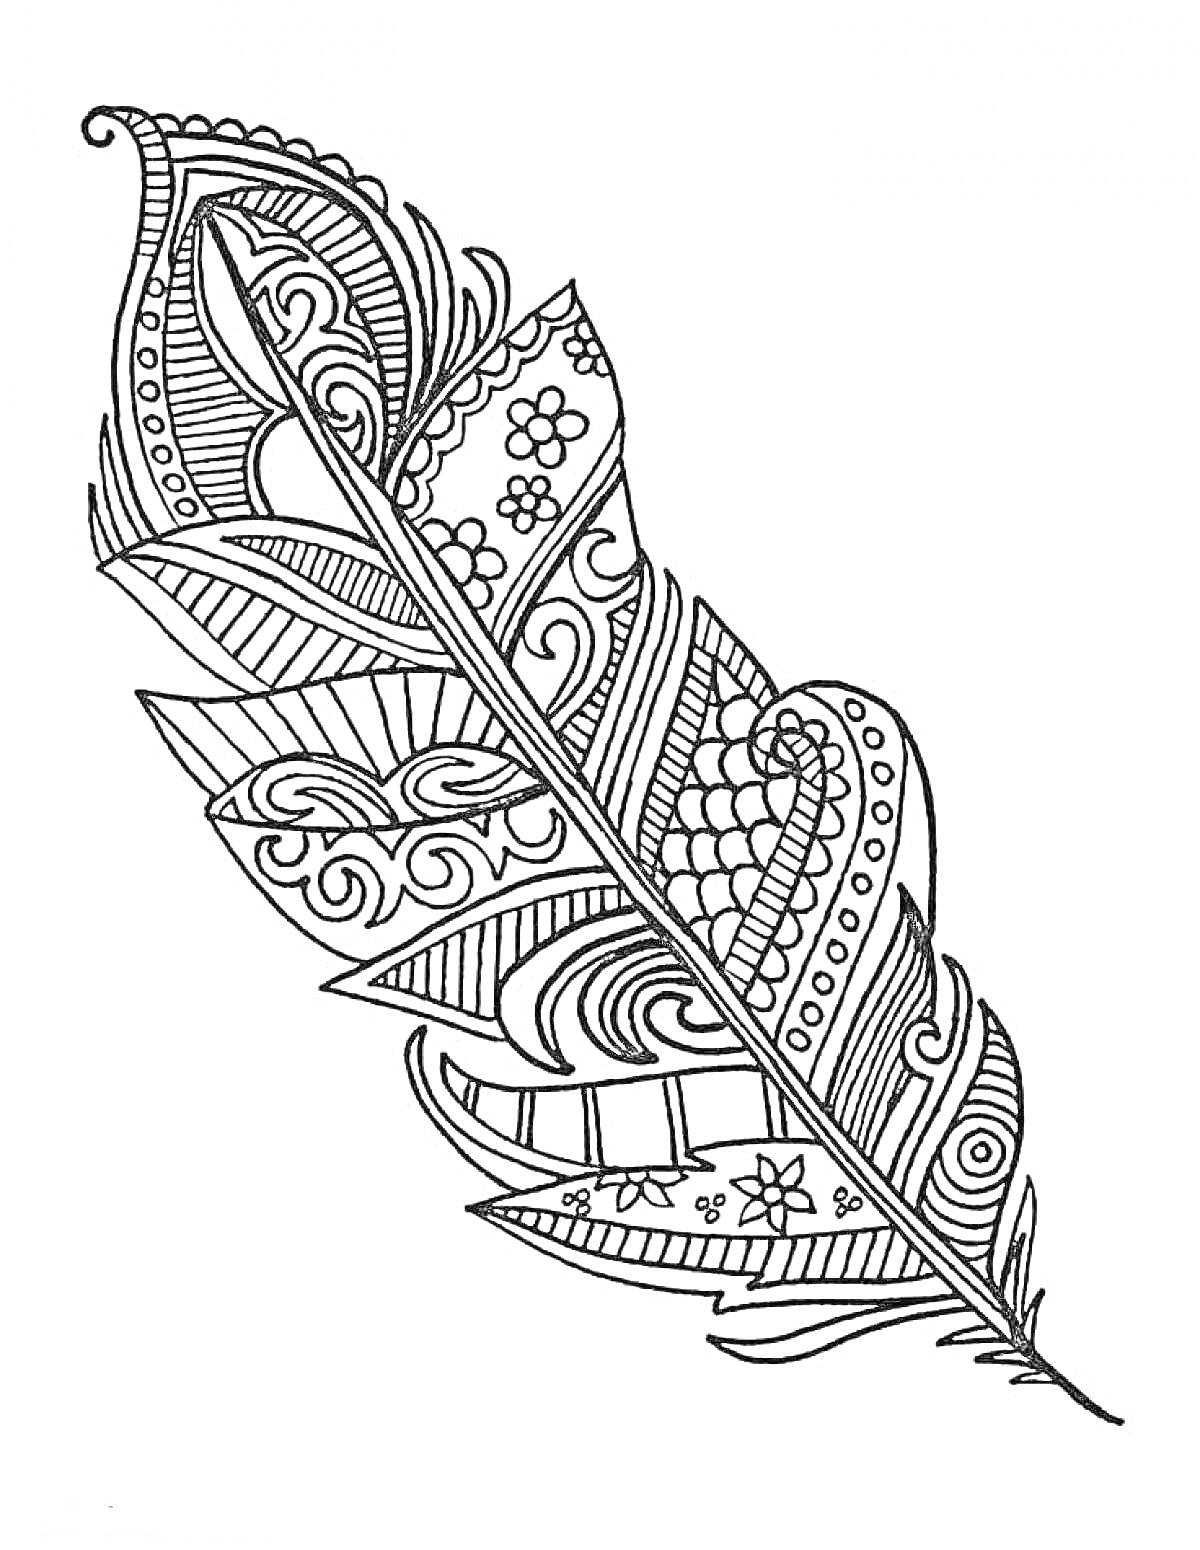 Раскраска Перо с дудлинг-узорами (листья, цветы, завитки, геометрические формы)